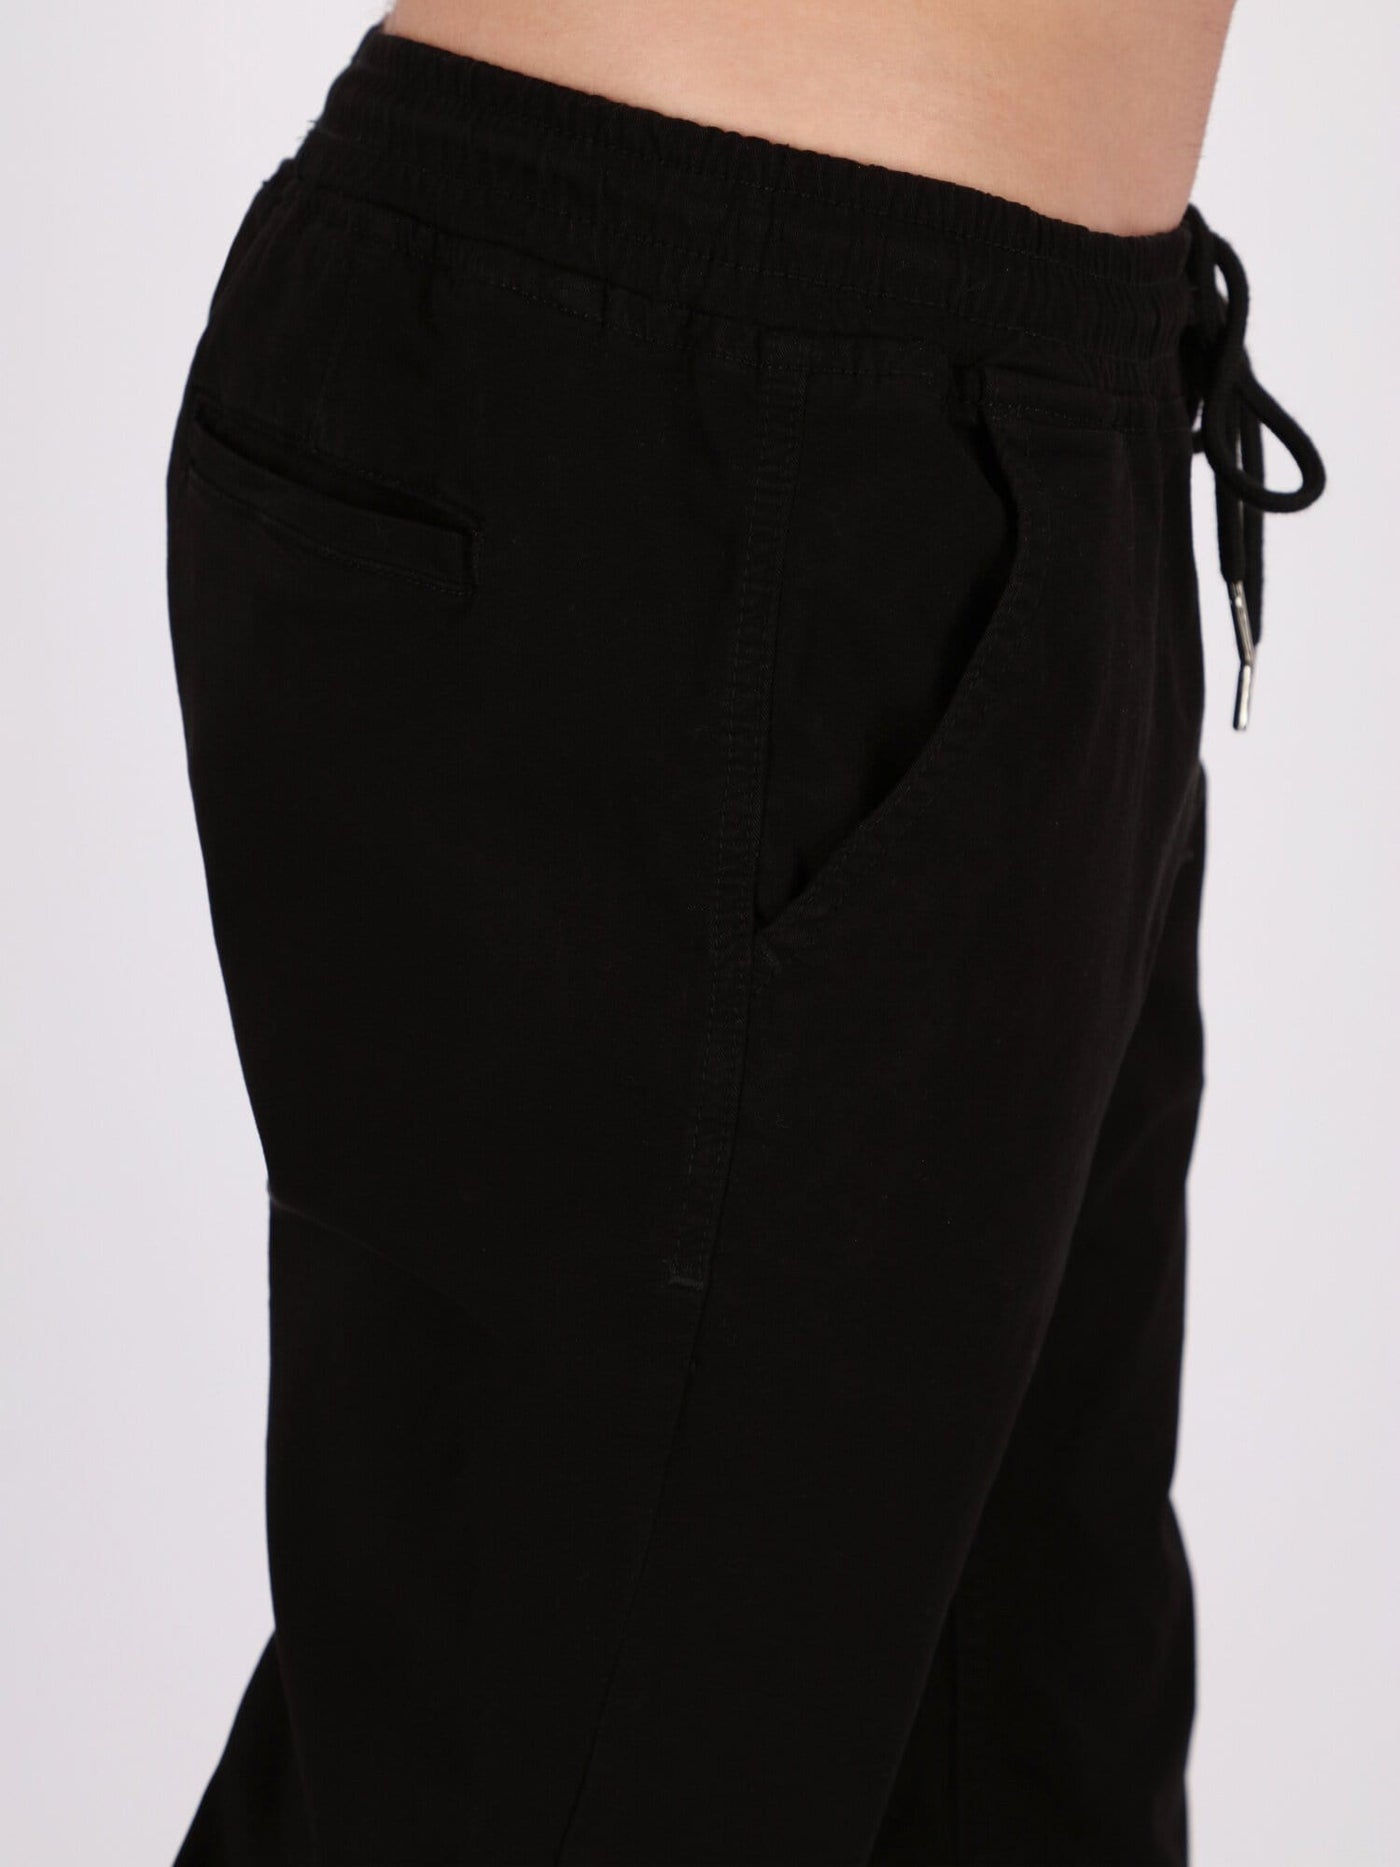 OR Pants & Shorts Black / 30 Jogger Pants with Drawstring